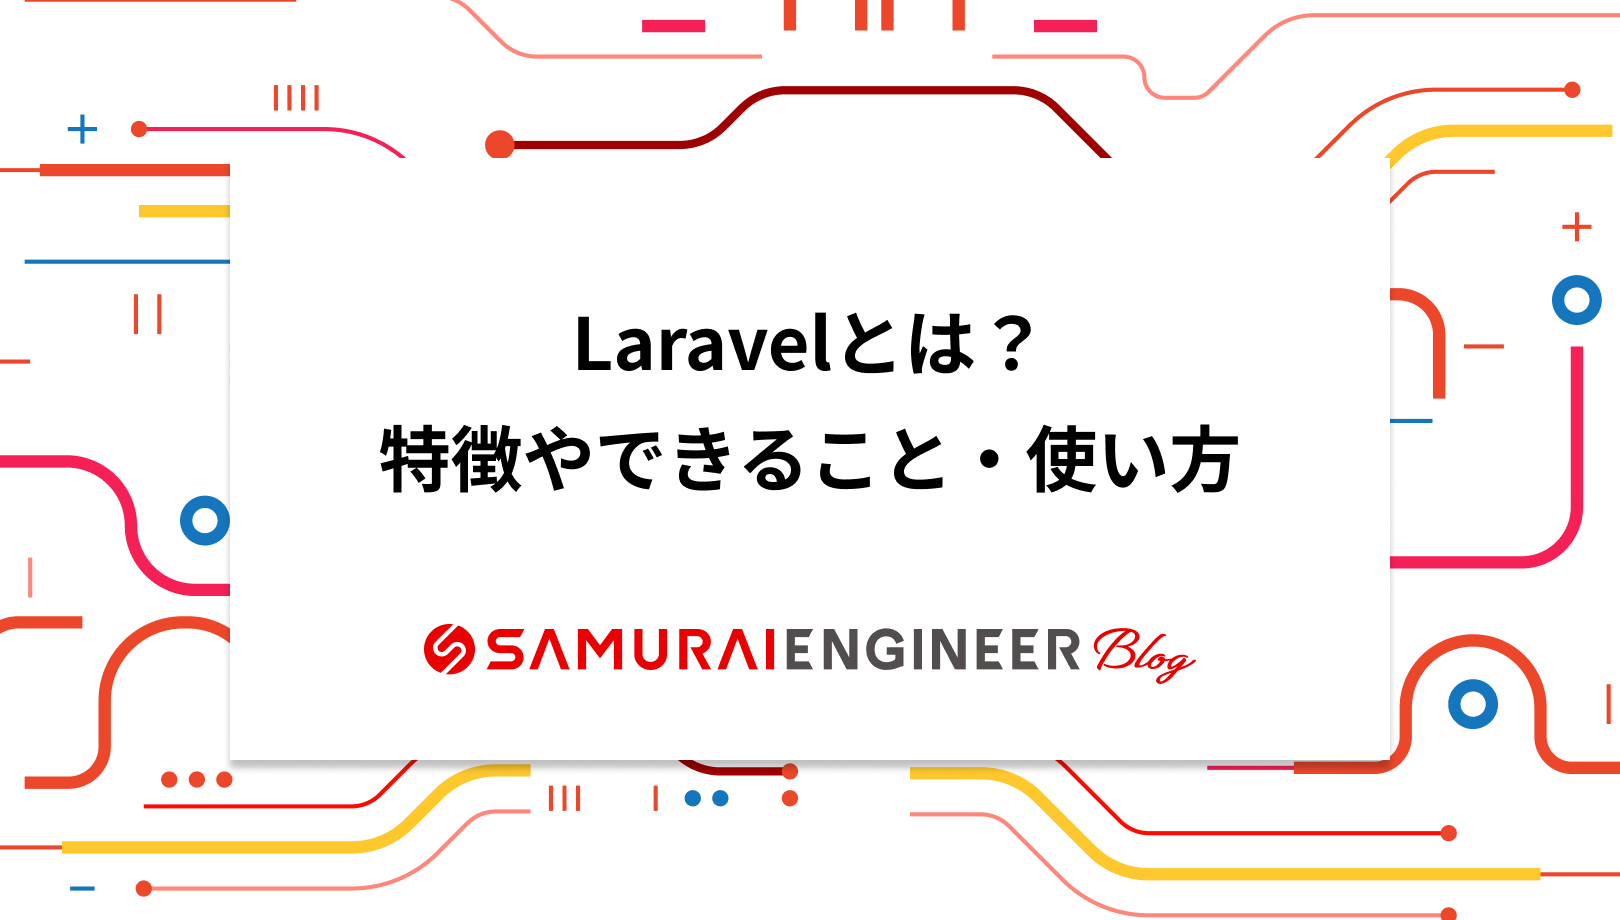 Laravelとは？PHPフレームワークの特徴やできること、使い方も紹介